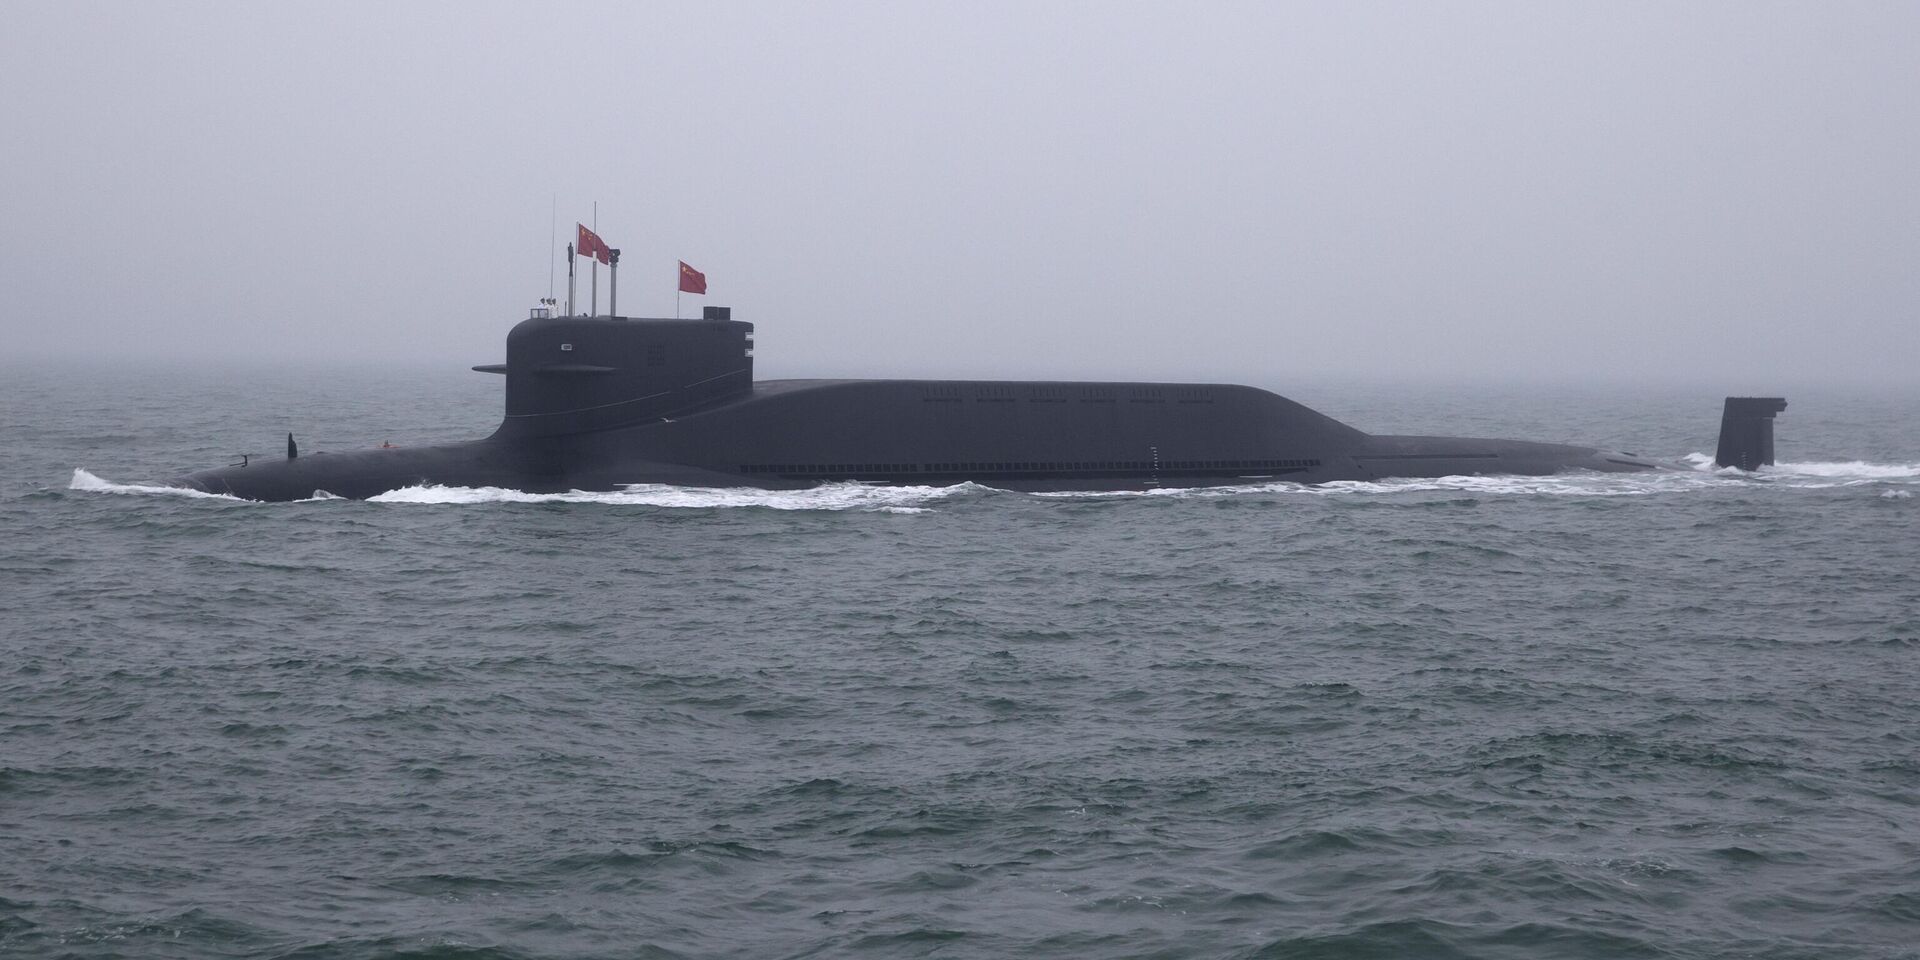 Атомная подводная лодка Long March 11 типа 094A класса Jin Народно-освободительной армии Китая (НОАК) принимает участие в военно-морском параде в честь 70-й годовщины основания ВМС НОАК Китая. 23 апреля 2019 года - ИноСМИ, 1920, 22.11.2023